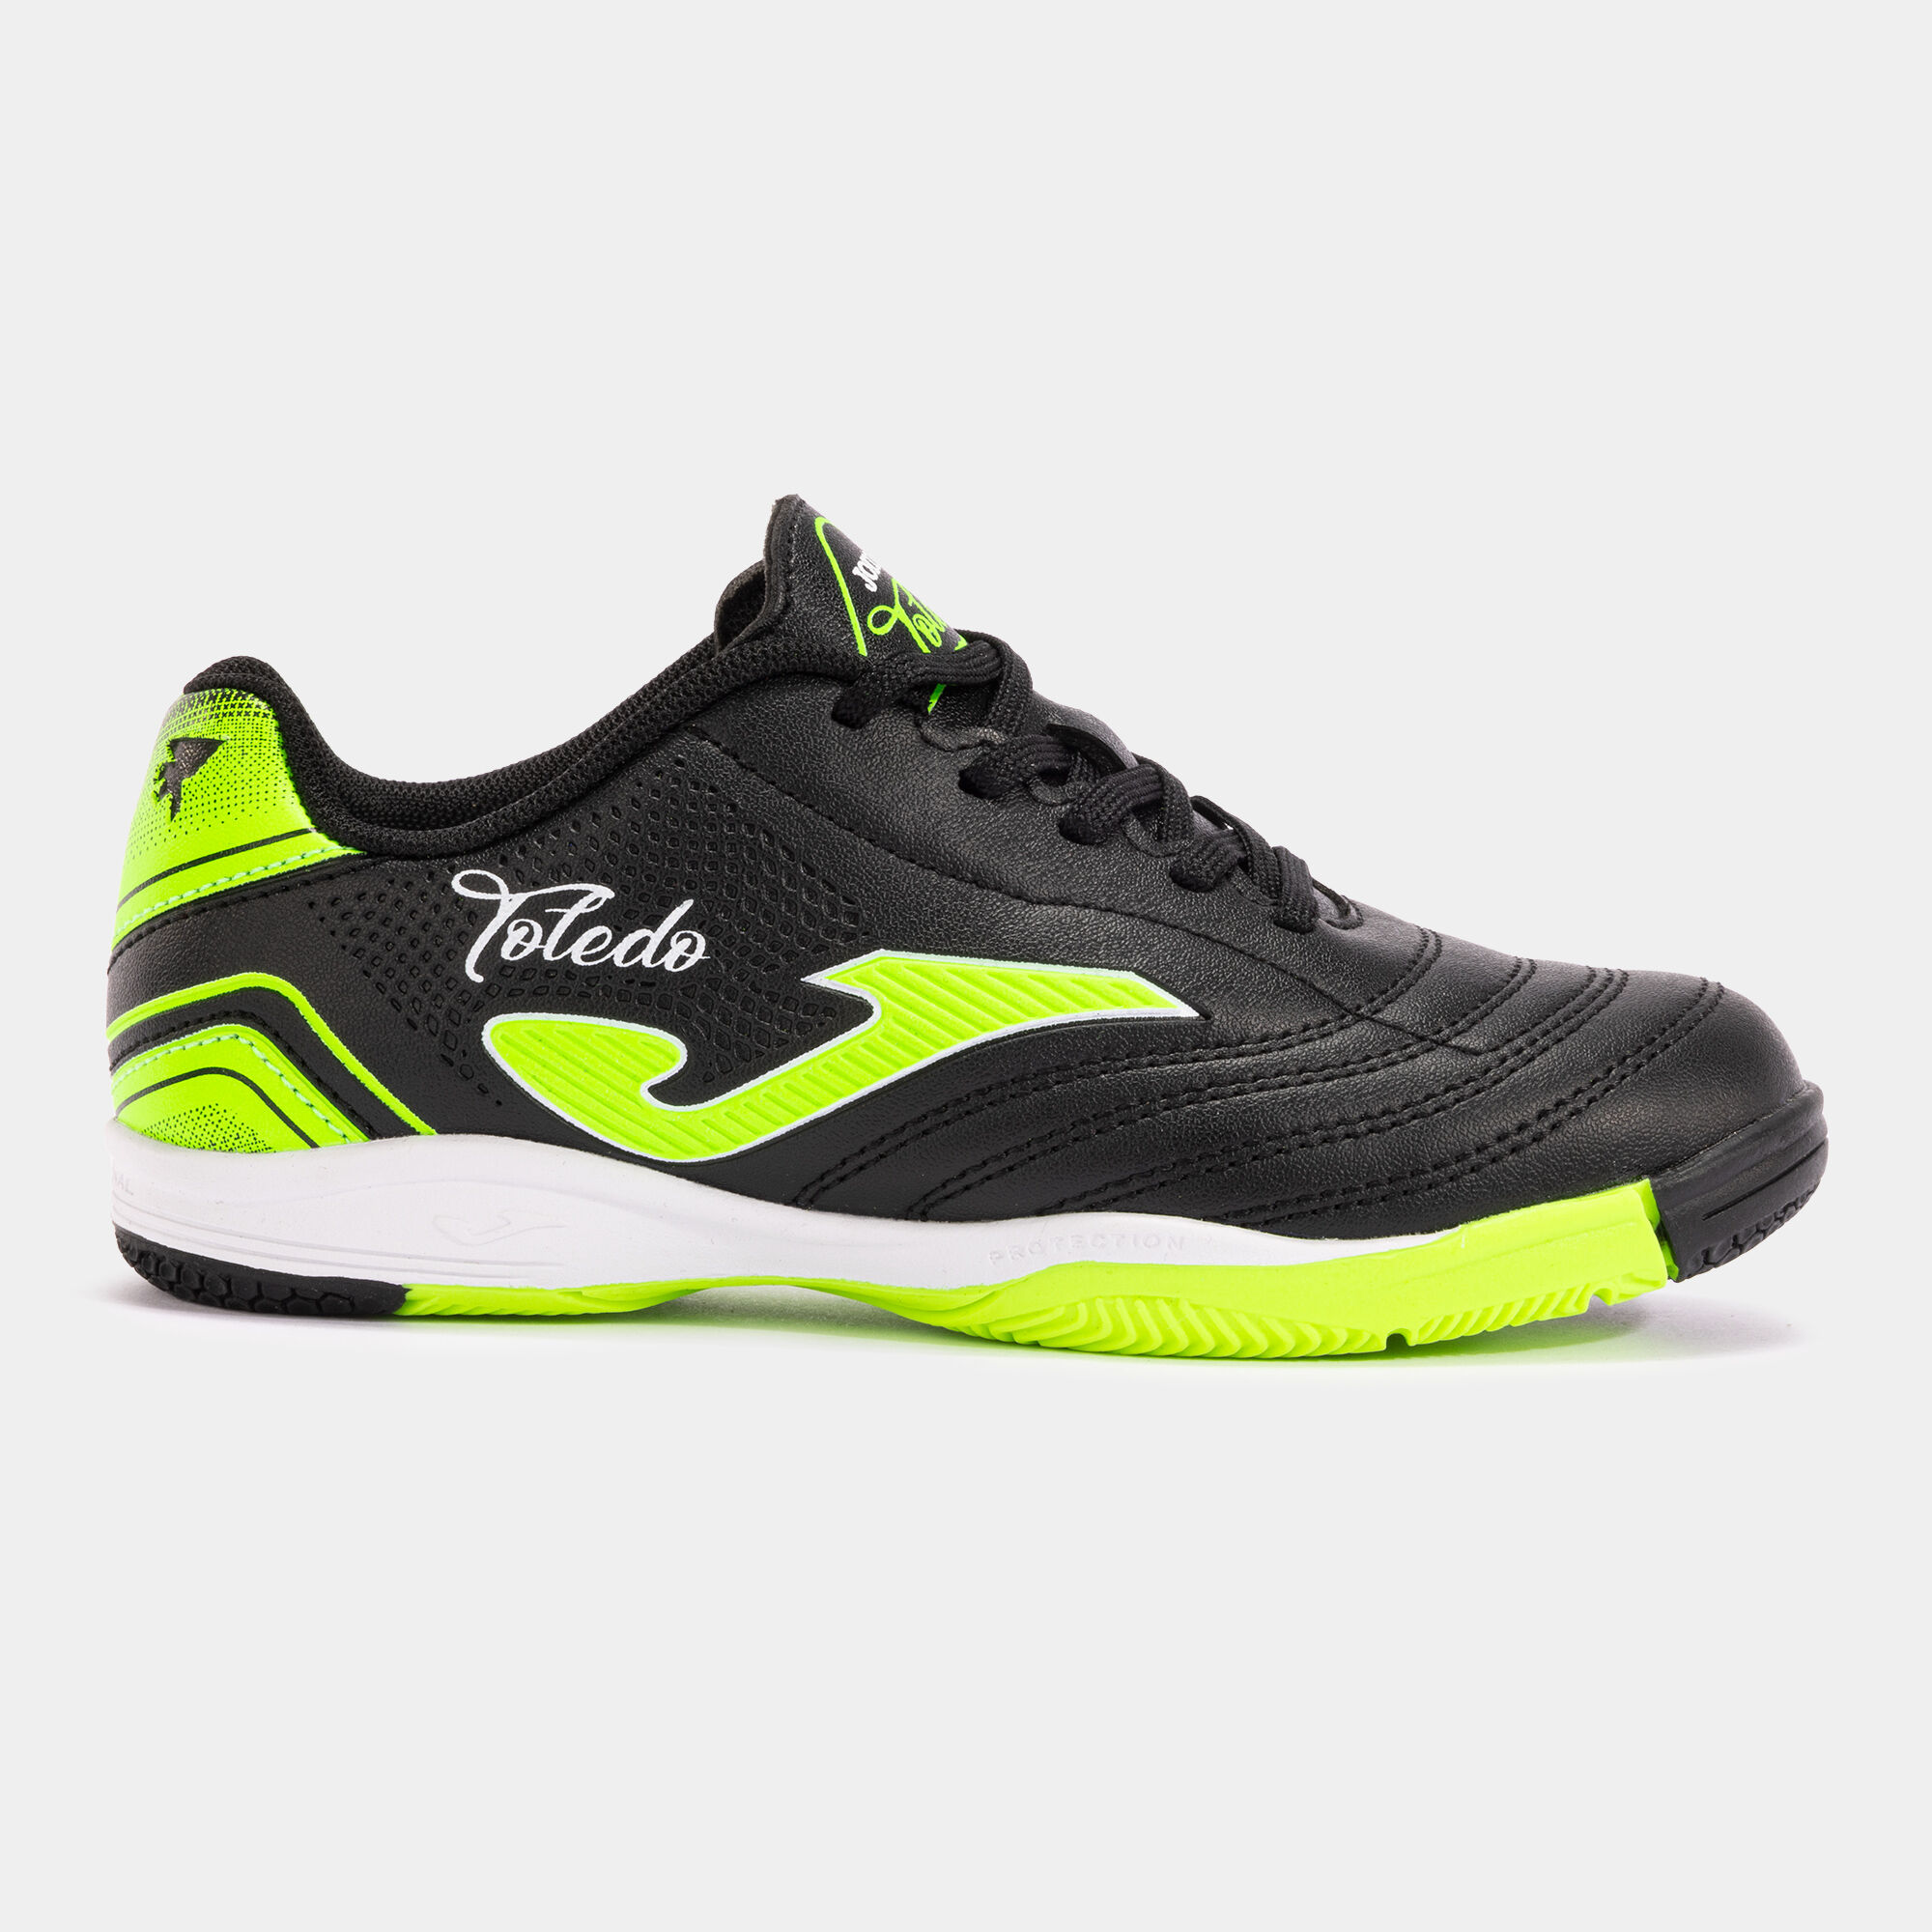 Chaussures futsal Toledo Jr 24 indoor junior noir vert fluo